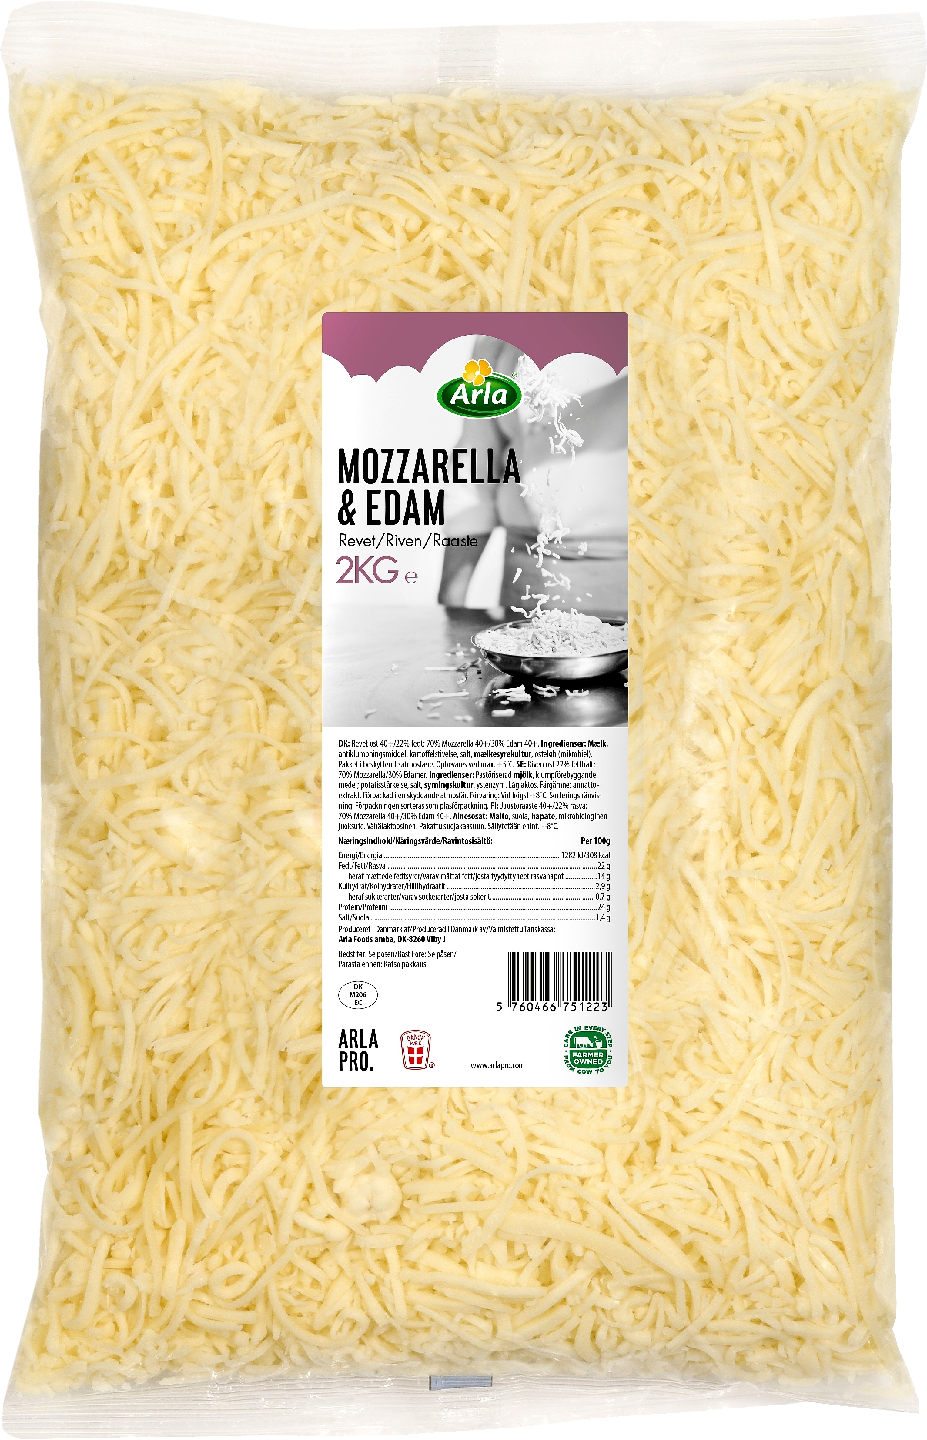 Arla Pro Mozzarella-Edam juustoraaste 2kg 23% vähälaktoosinen